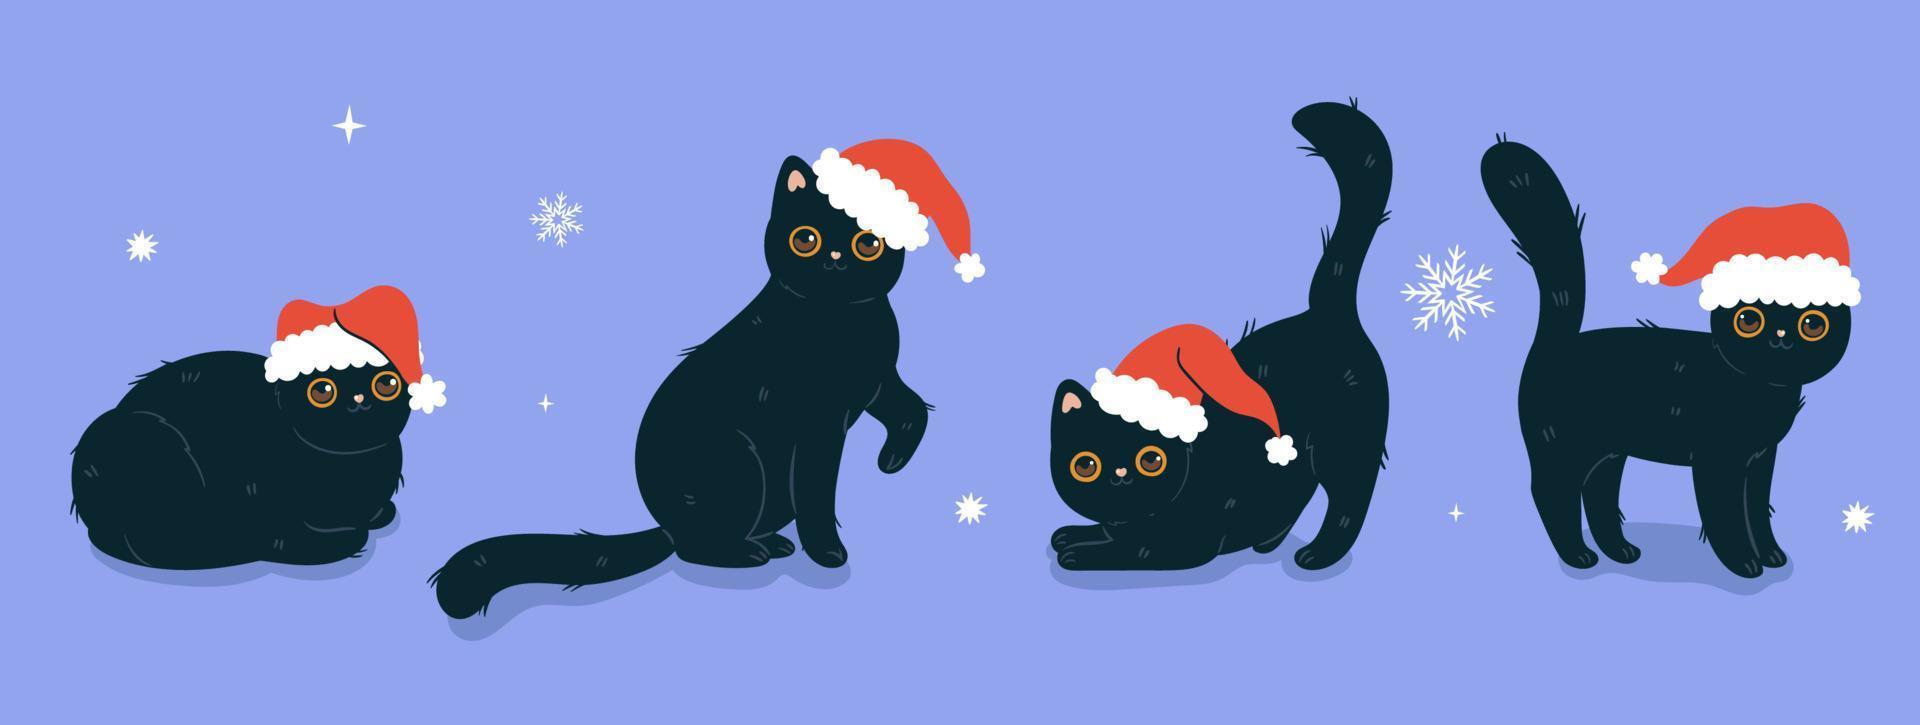 samling av svart katter i röd santa hattar. vektor grafik.